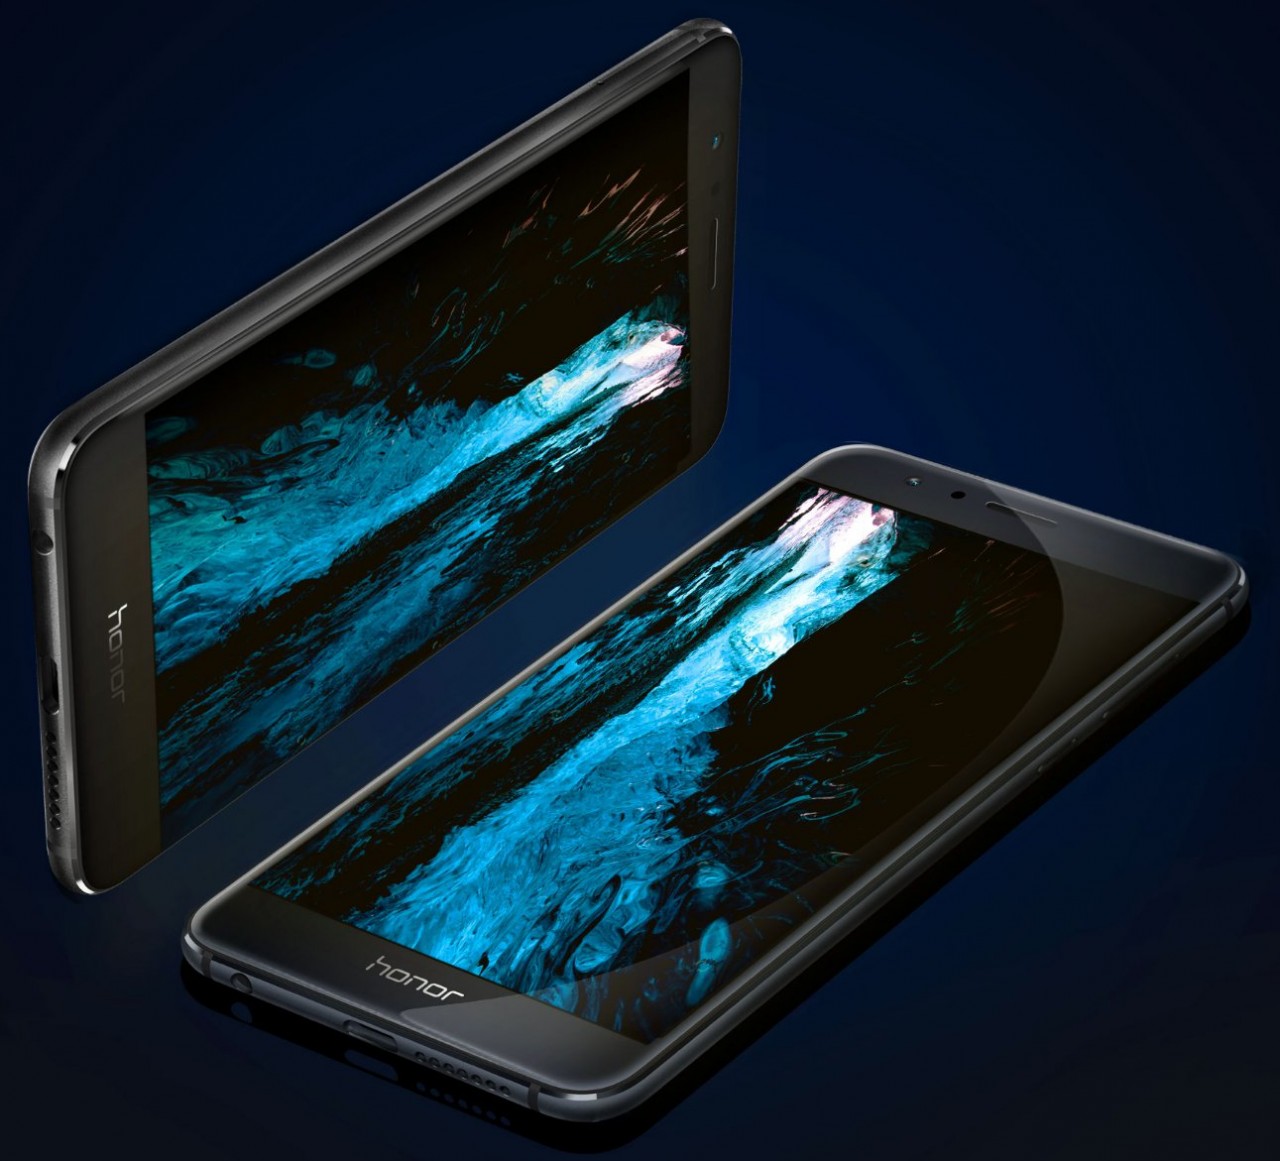 Huawei、P9と同等性能を備えたhonor 8を米国で8月26日に発売 価格は$399.99 – Dream Seed.